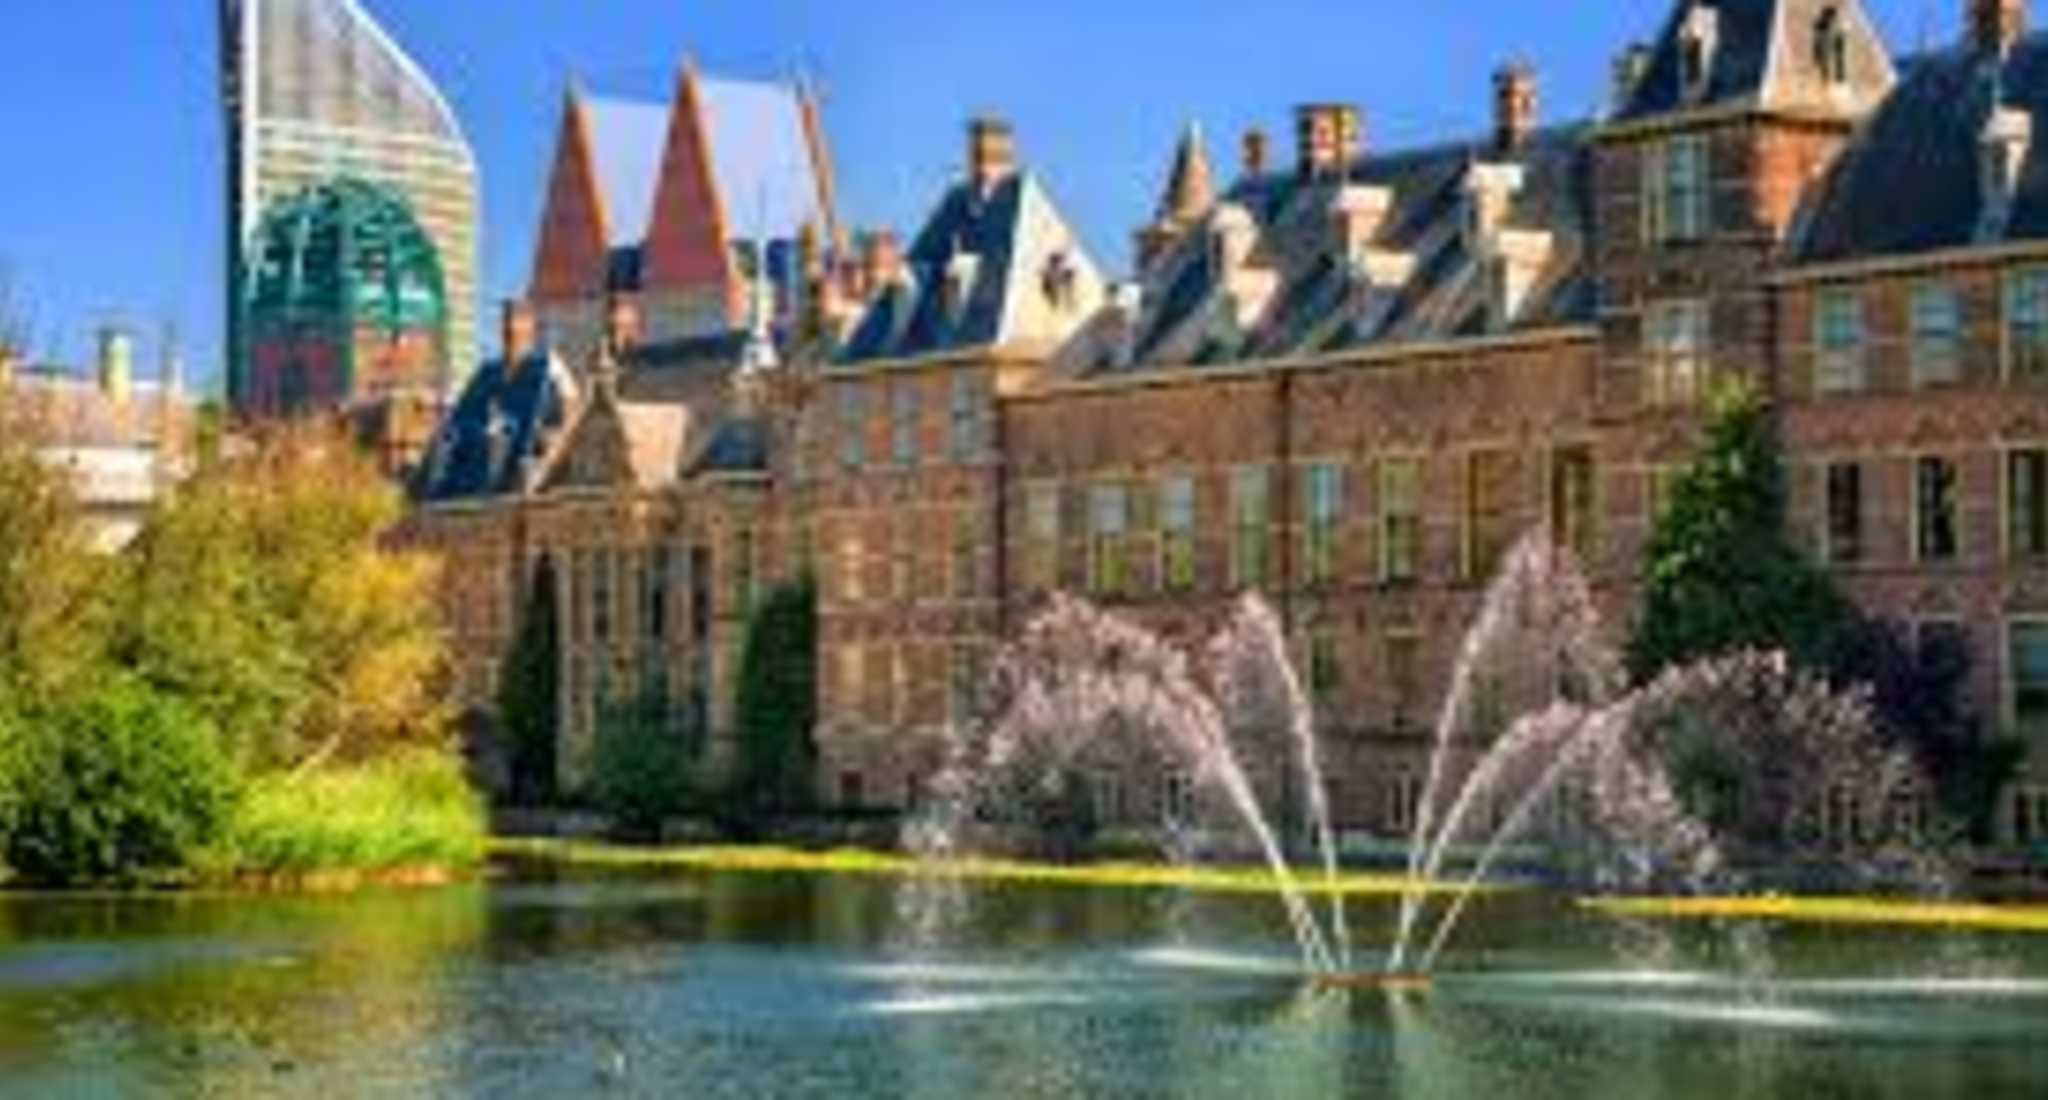 Bezorger vacatures in Den Haag 